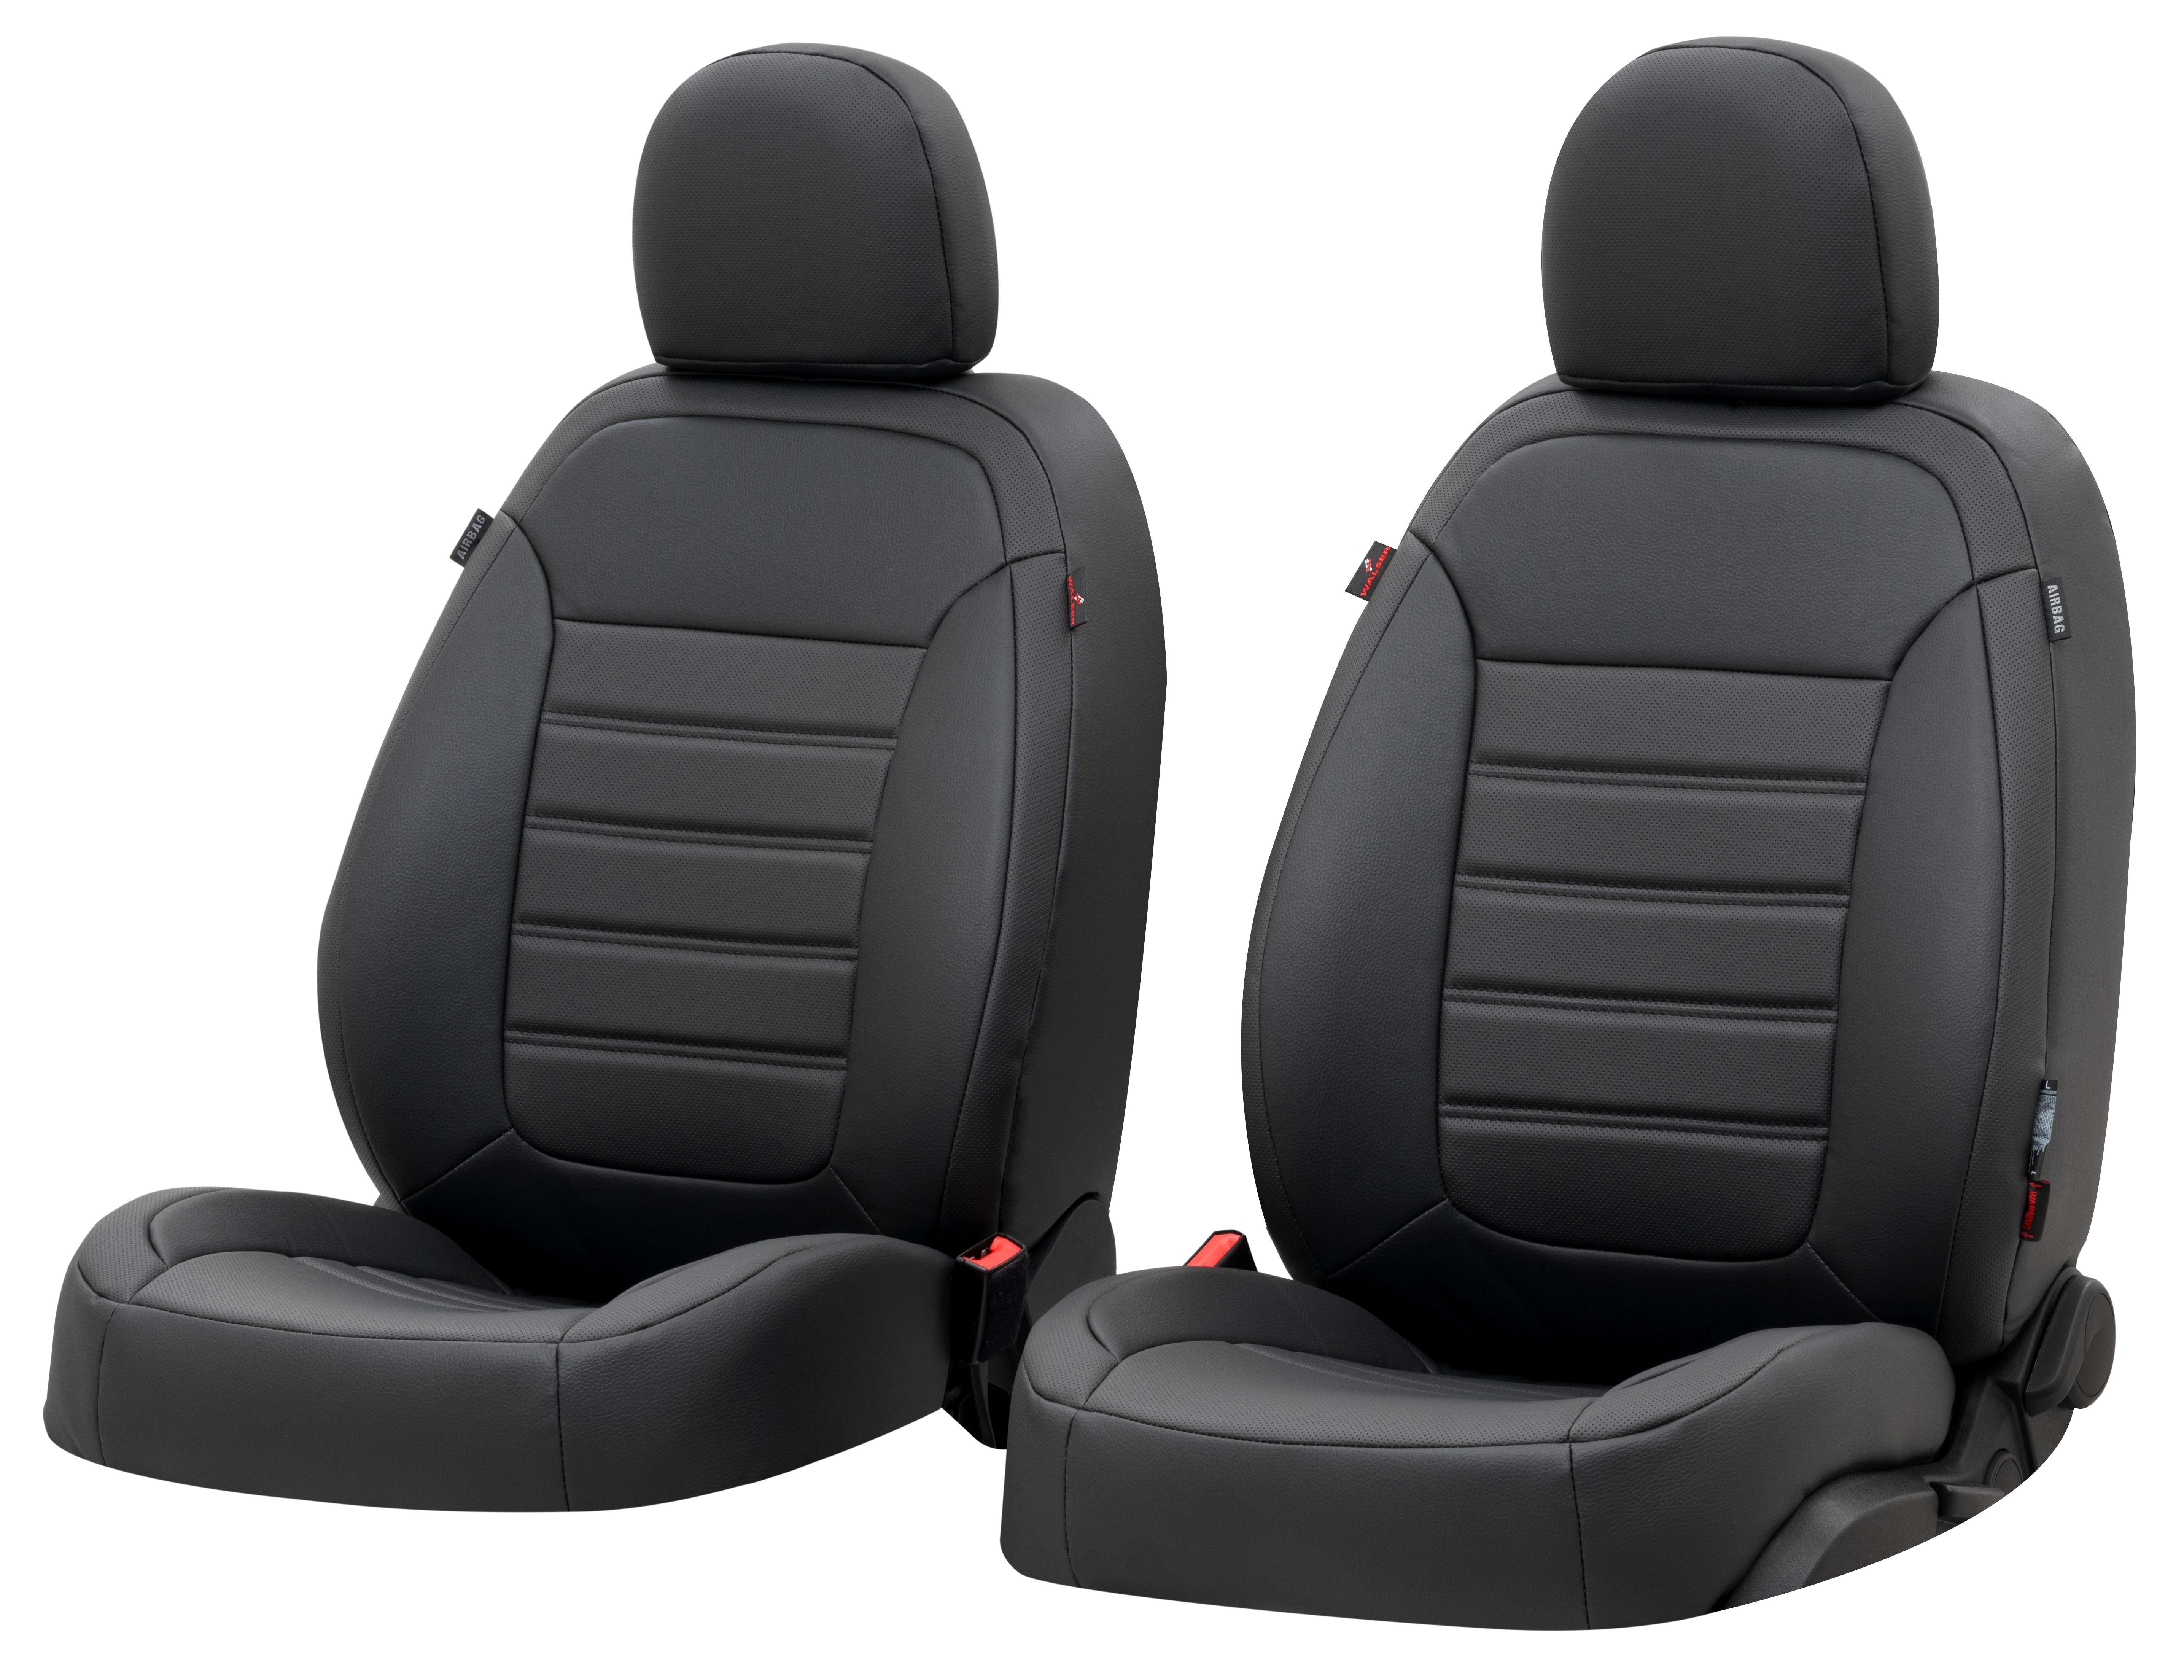 Housse de siège Robusto pour VW Caravelle VI 04/2015-auj., 2 housses de siège pour sièges normaux